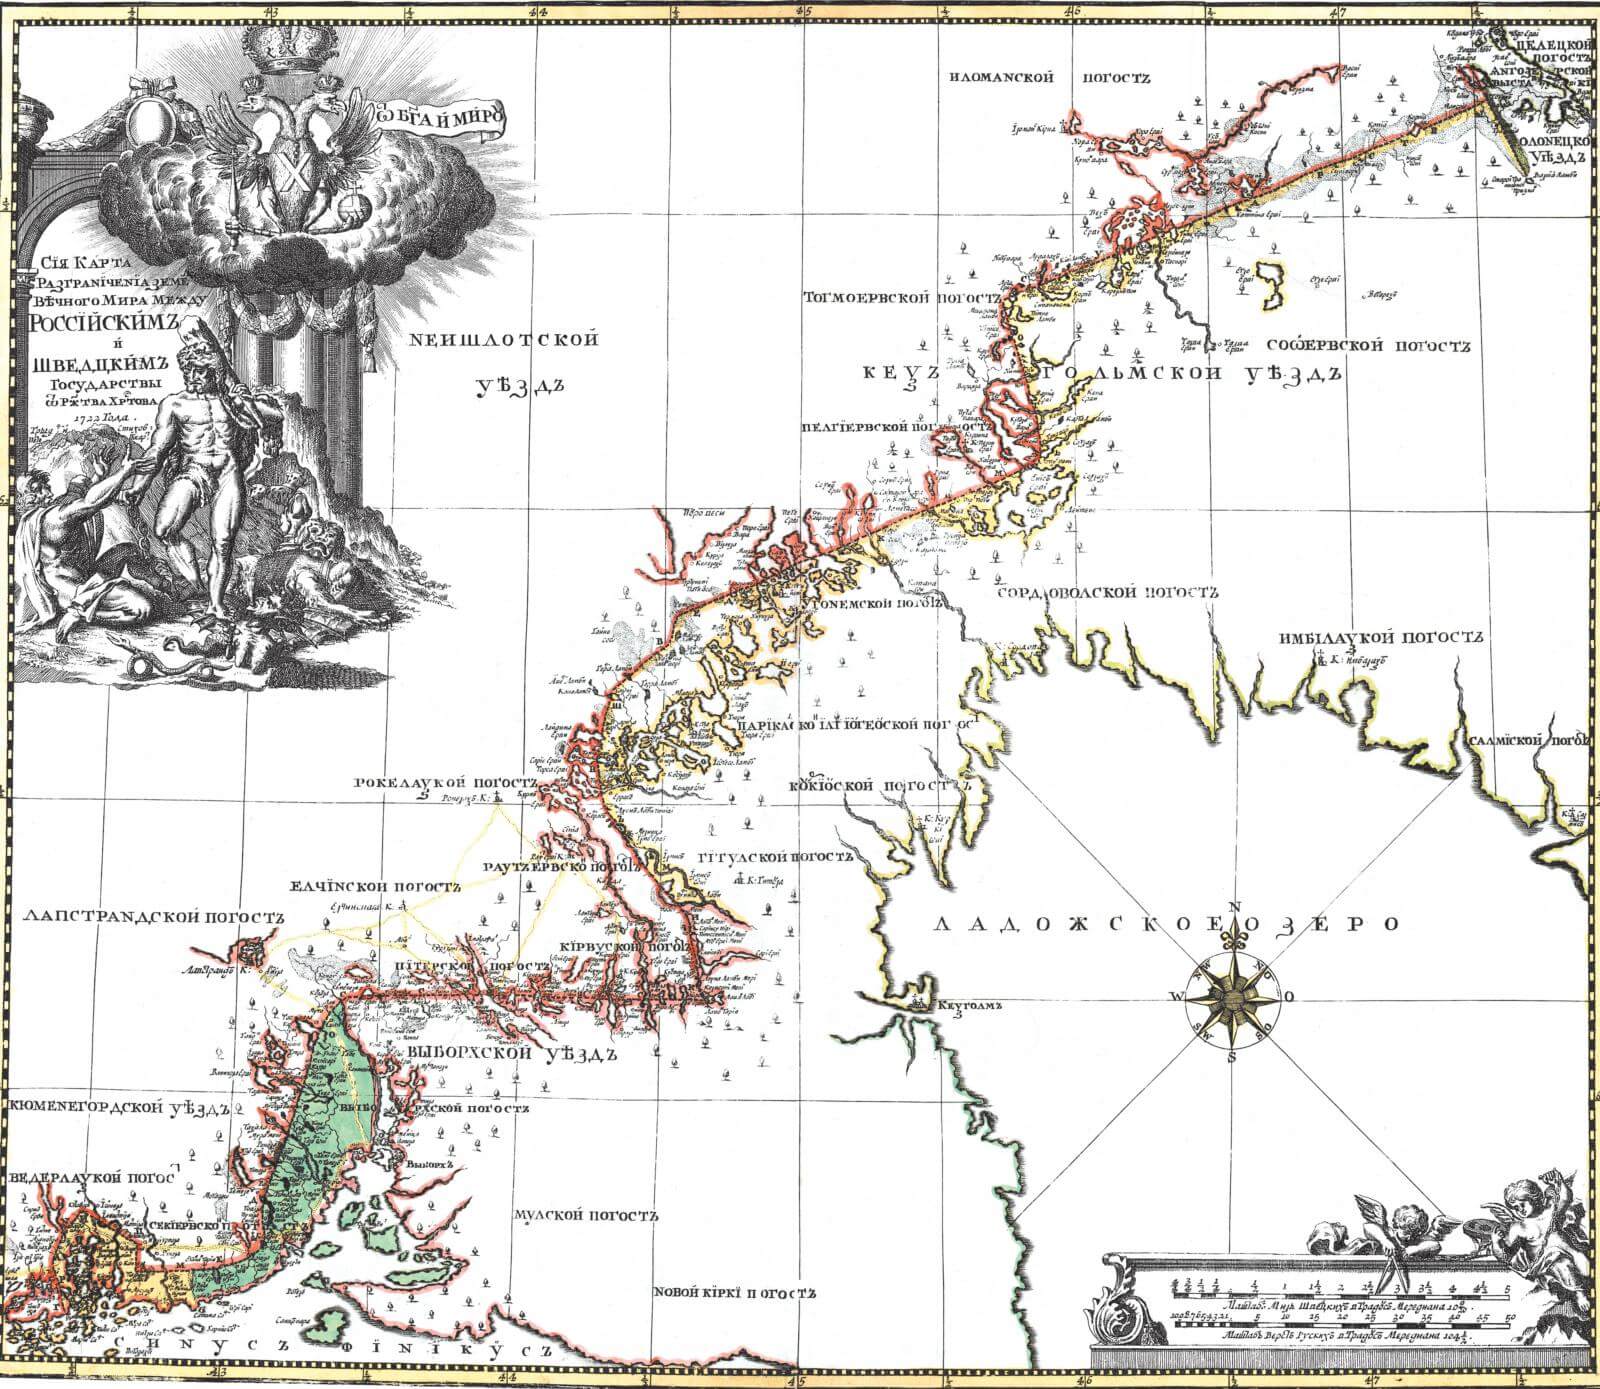 Карта раздела земель по Ништадтскому мирному договору 1721 года между Россией и Швецией.